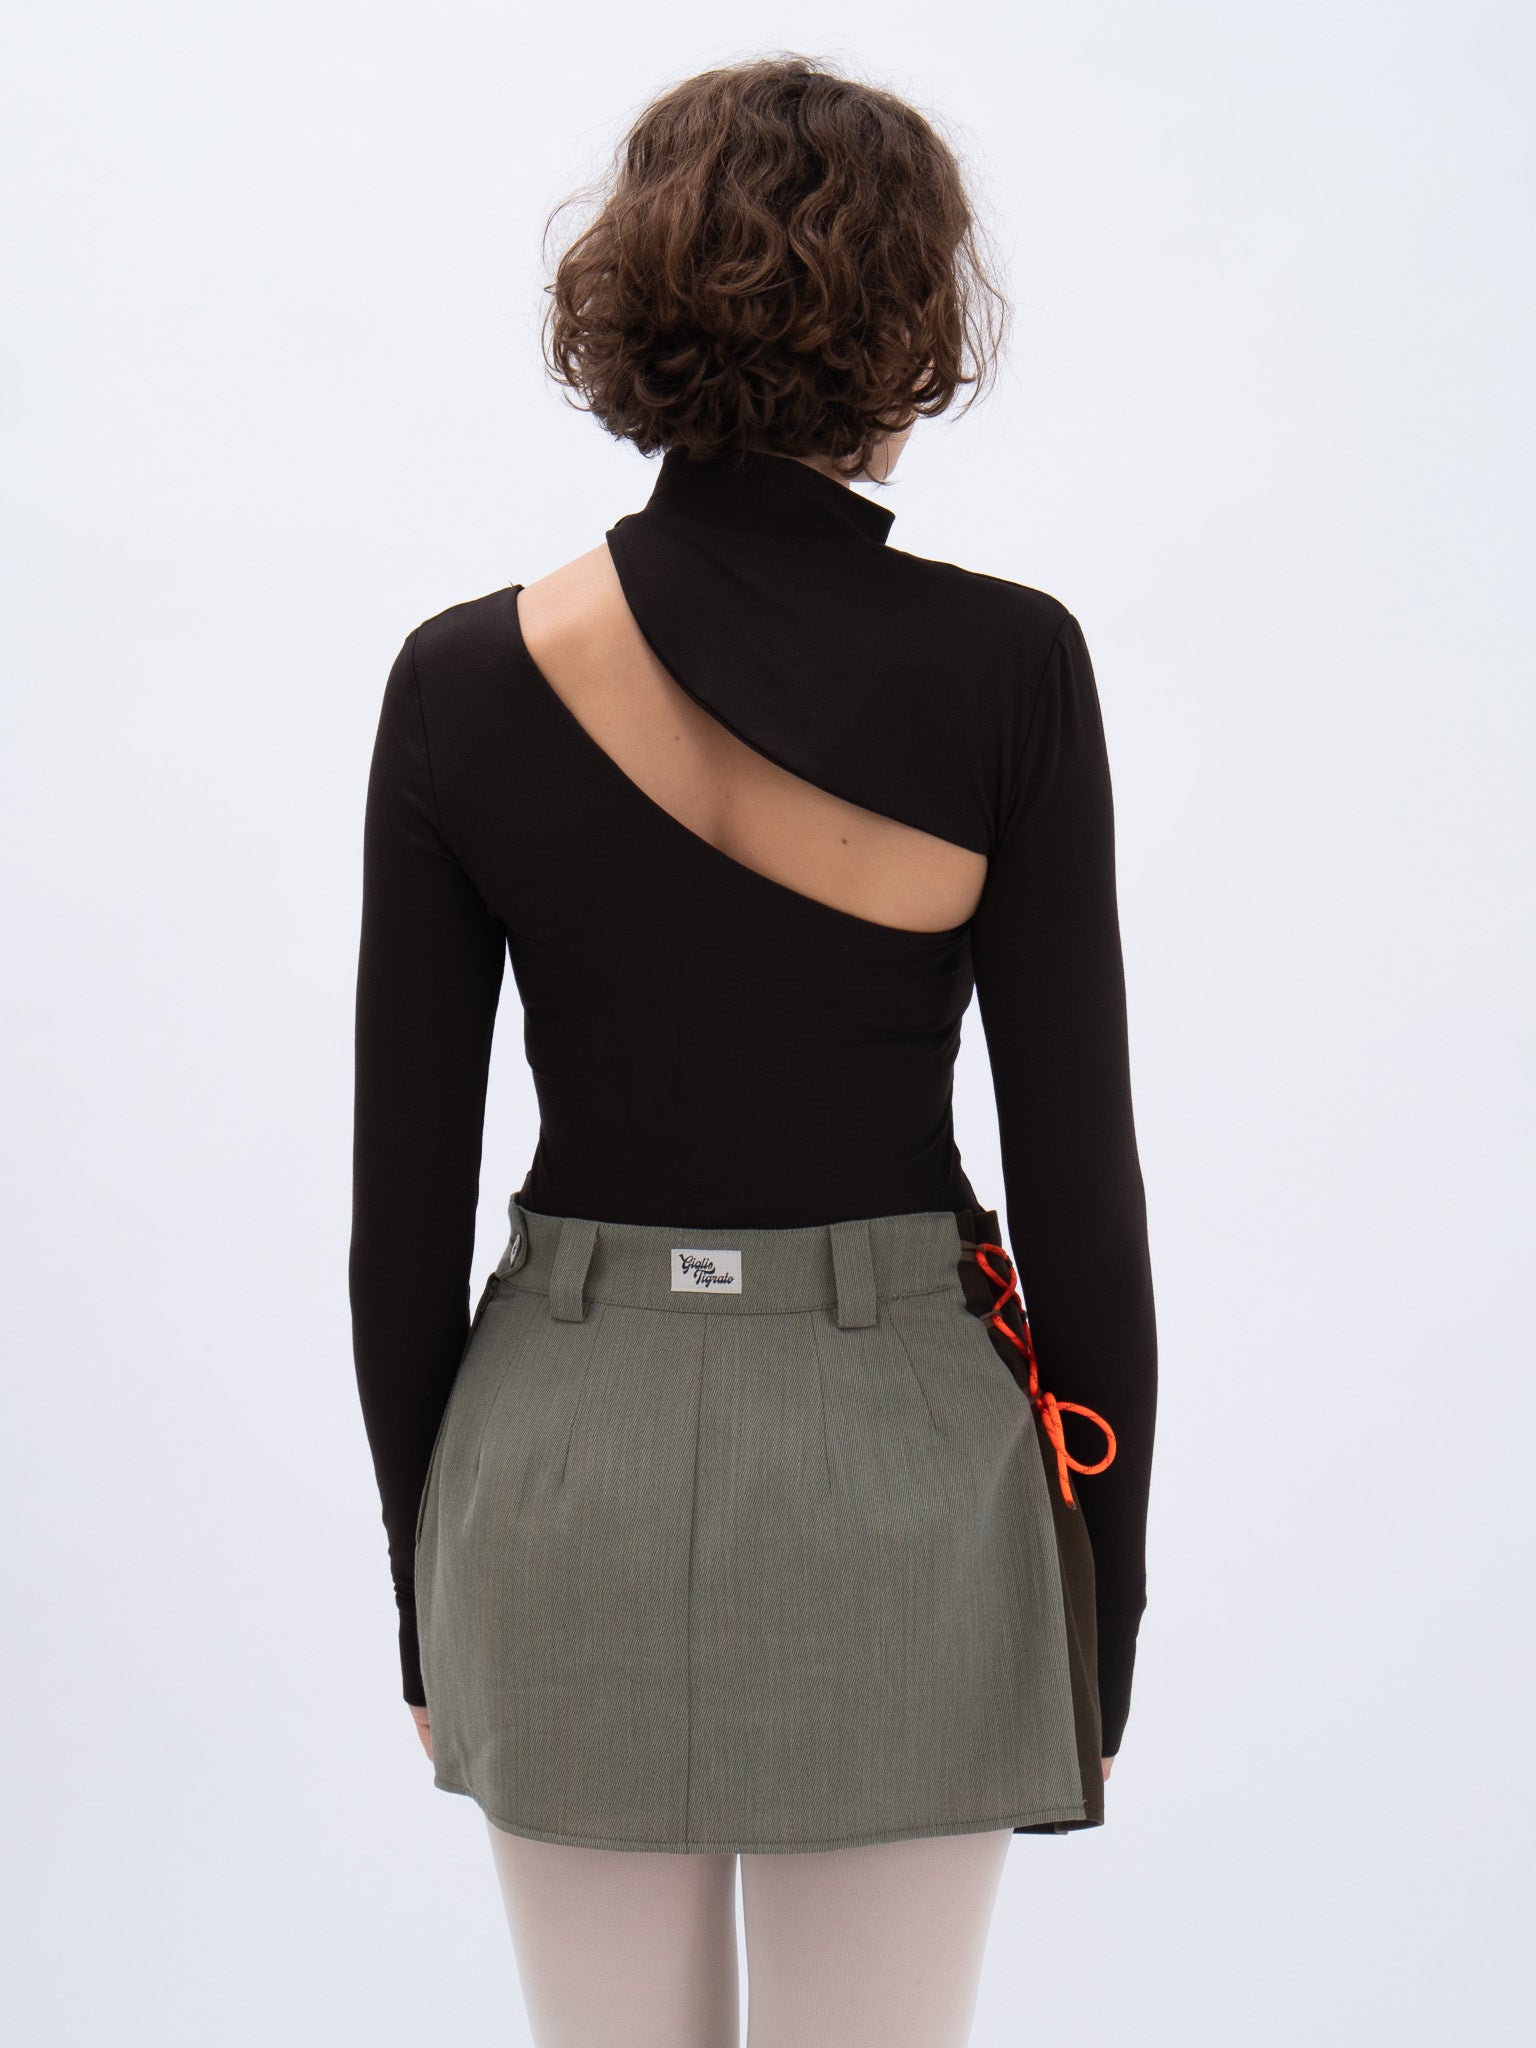 Mini Skirt, back view, wild, unique, vintage